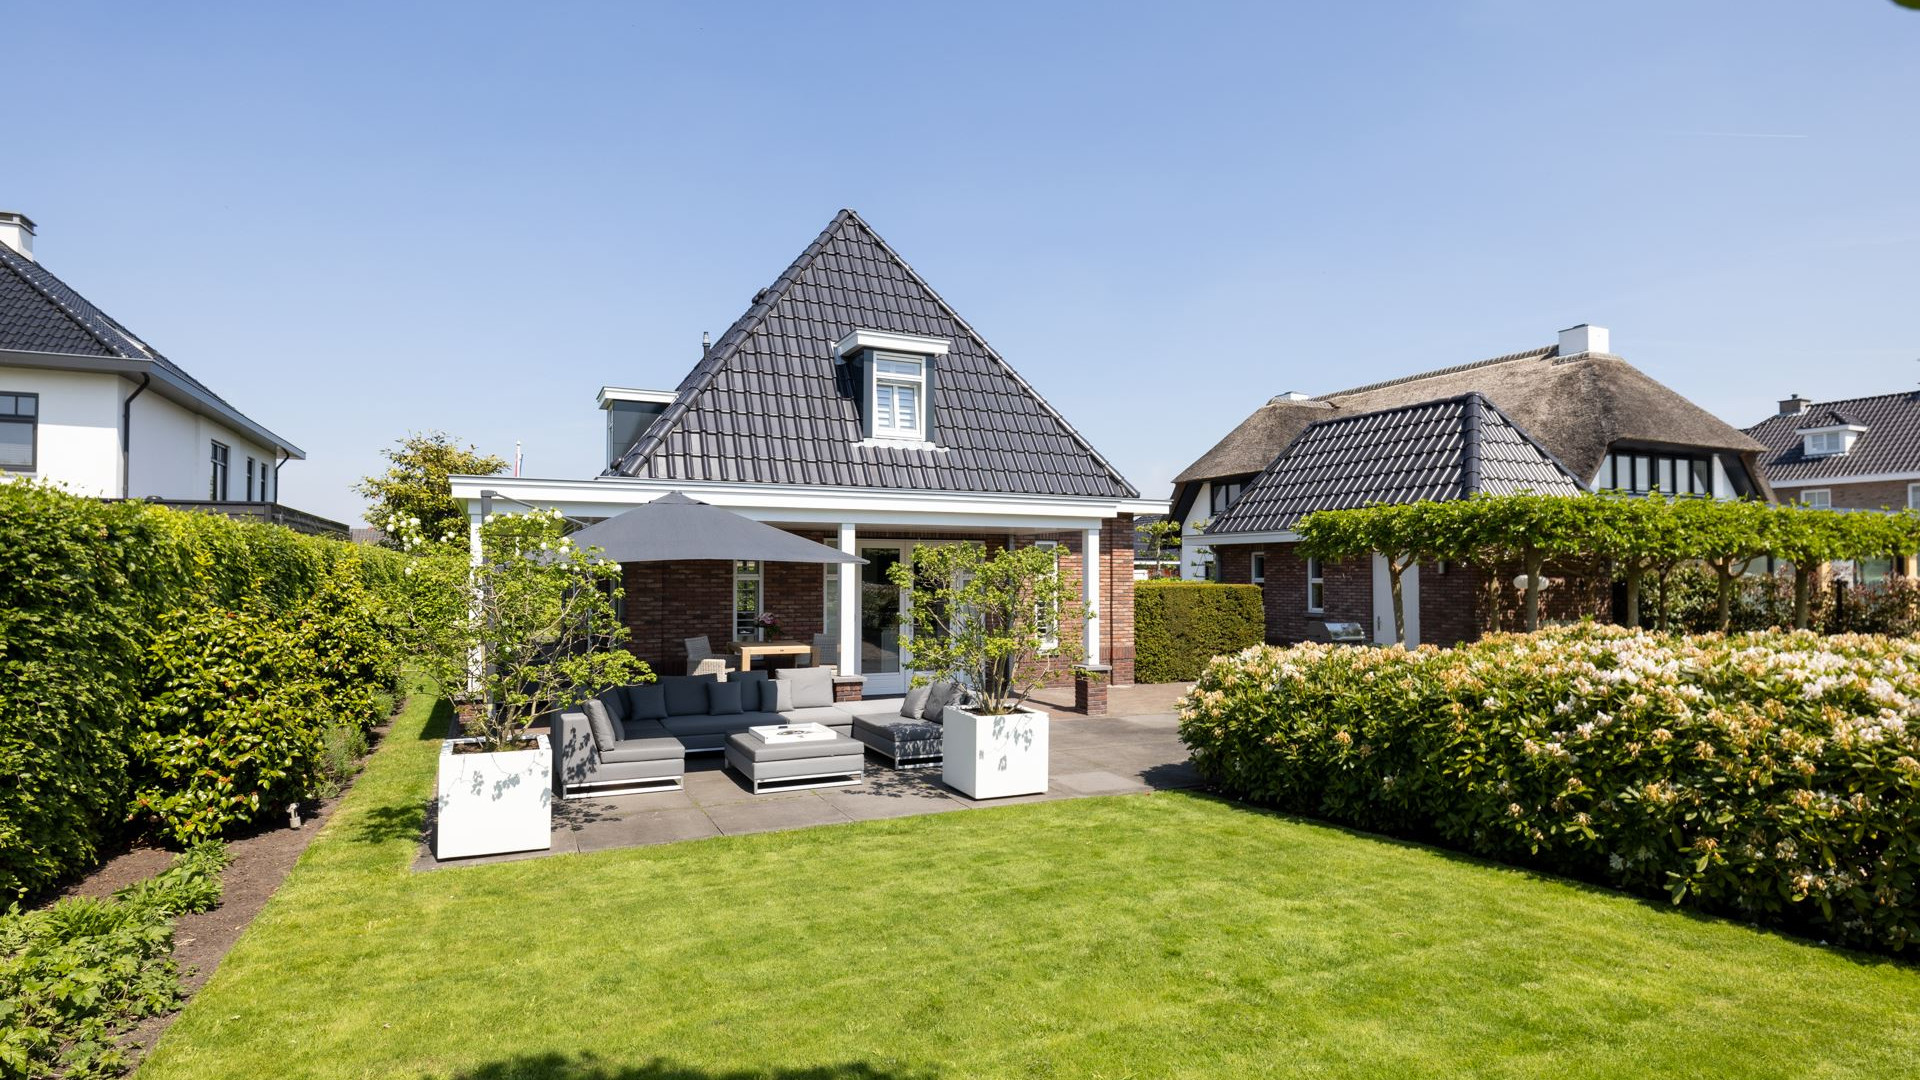 Keeper van Feijenoord koopt miljoenen villa in Berkel en Rodenrijs. Zie foto's 2